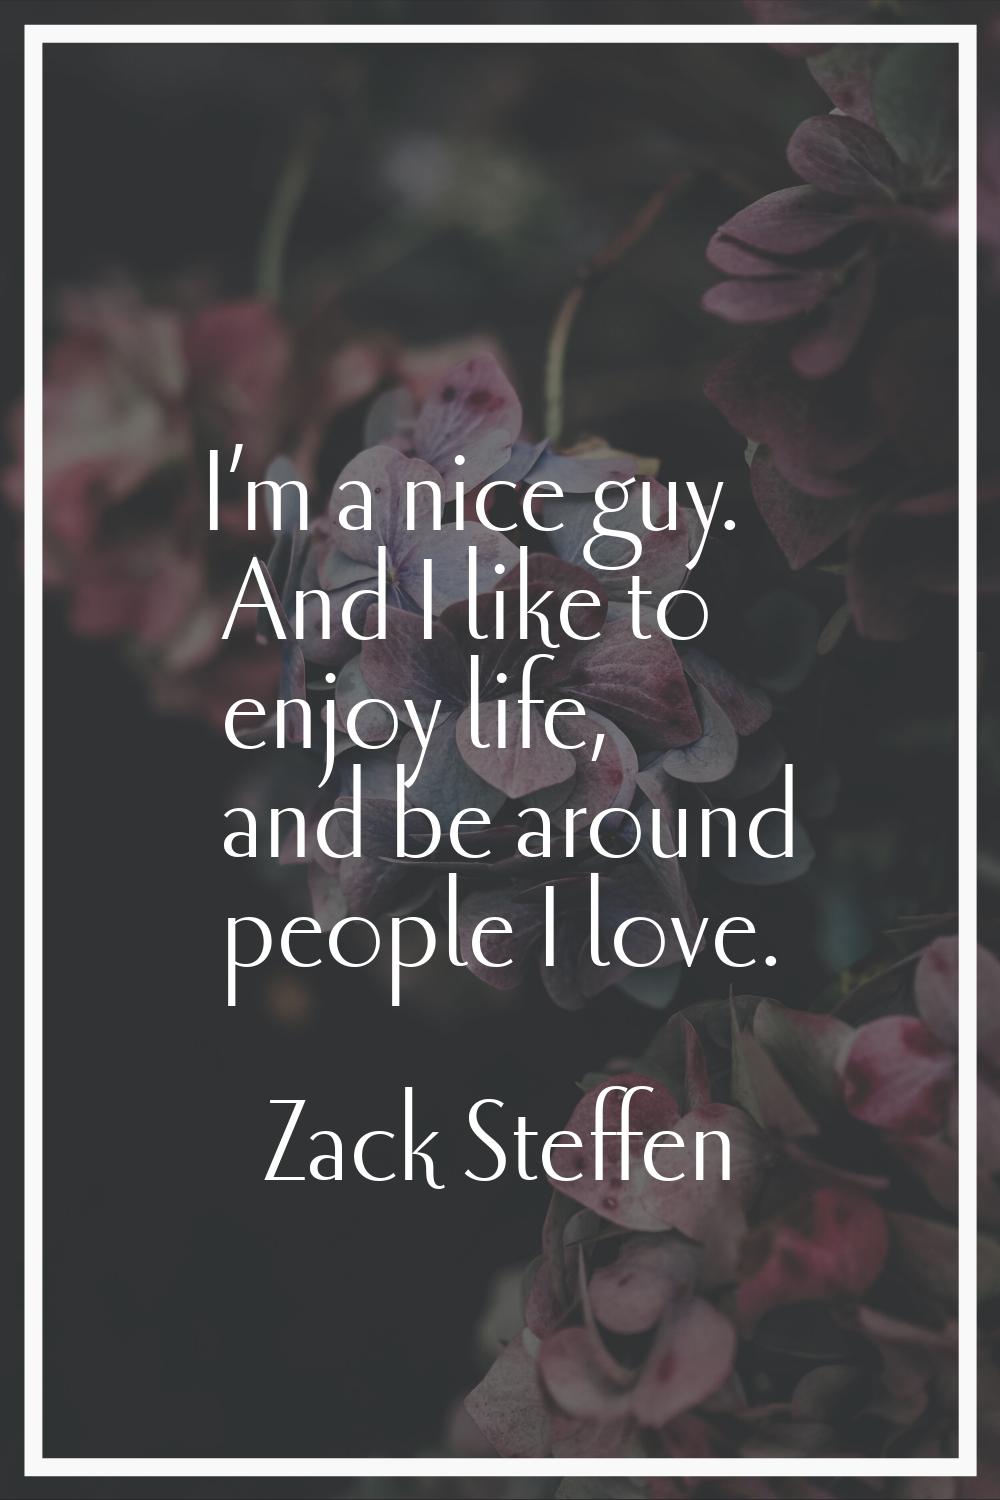 I’m a nice guy. And I like to enjoy life, and be around people I love.